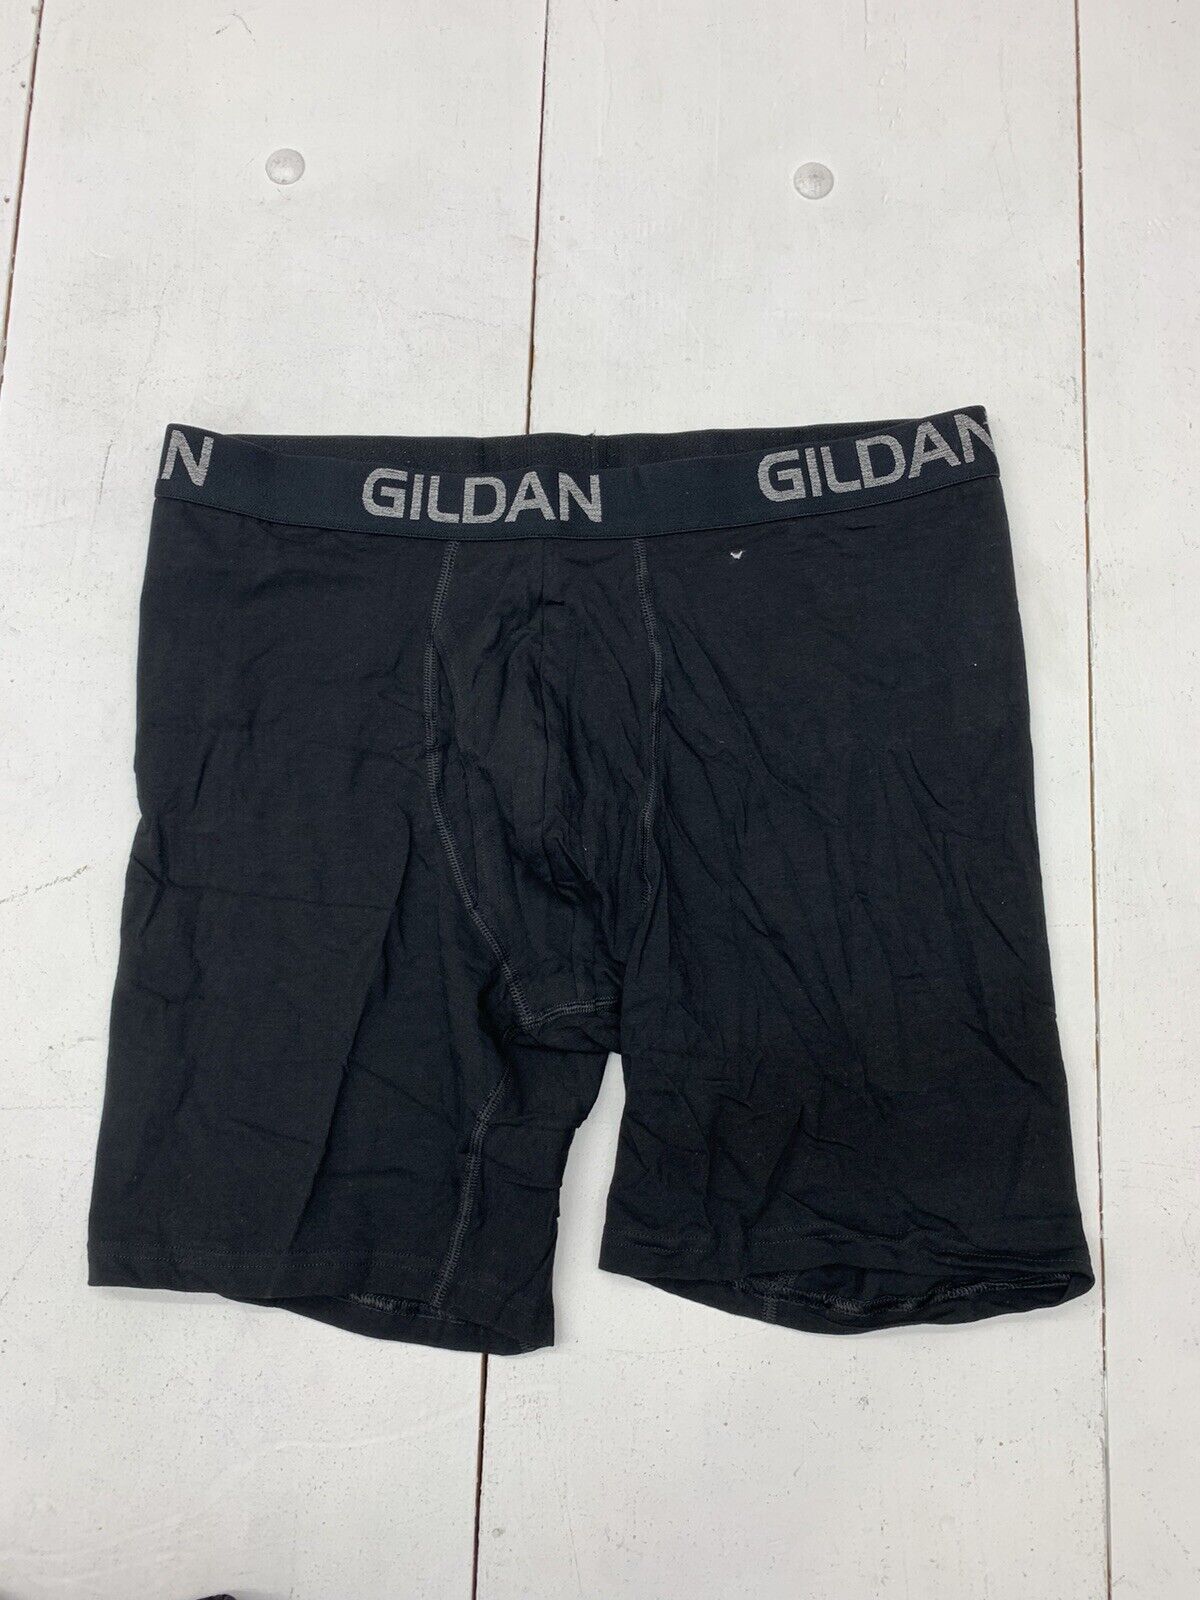 Gildan Mens Black Boxer Brief 4 Pack Underwear Size 2XL - beyond exchange